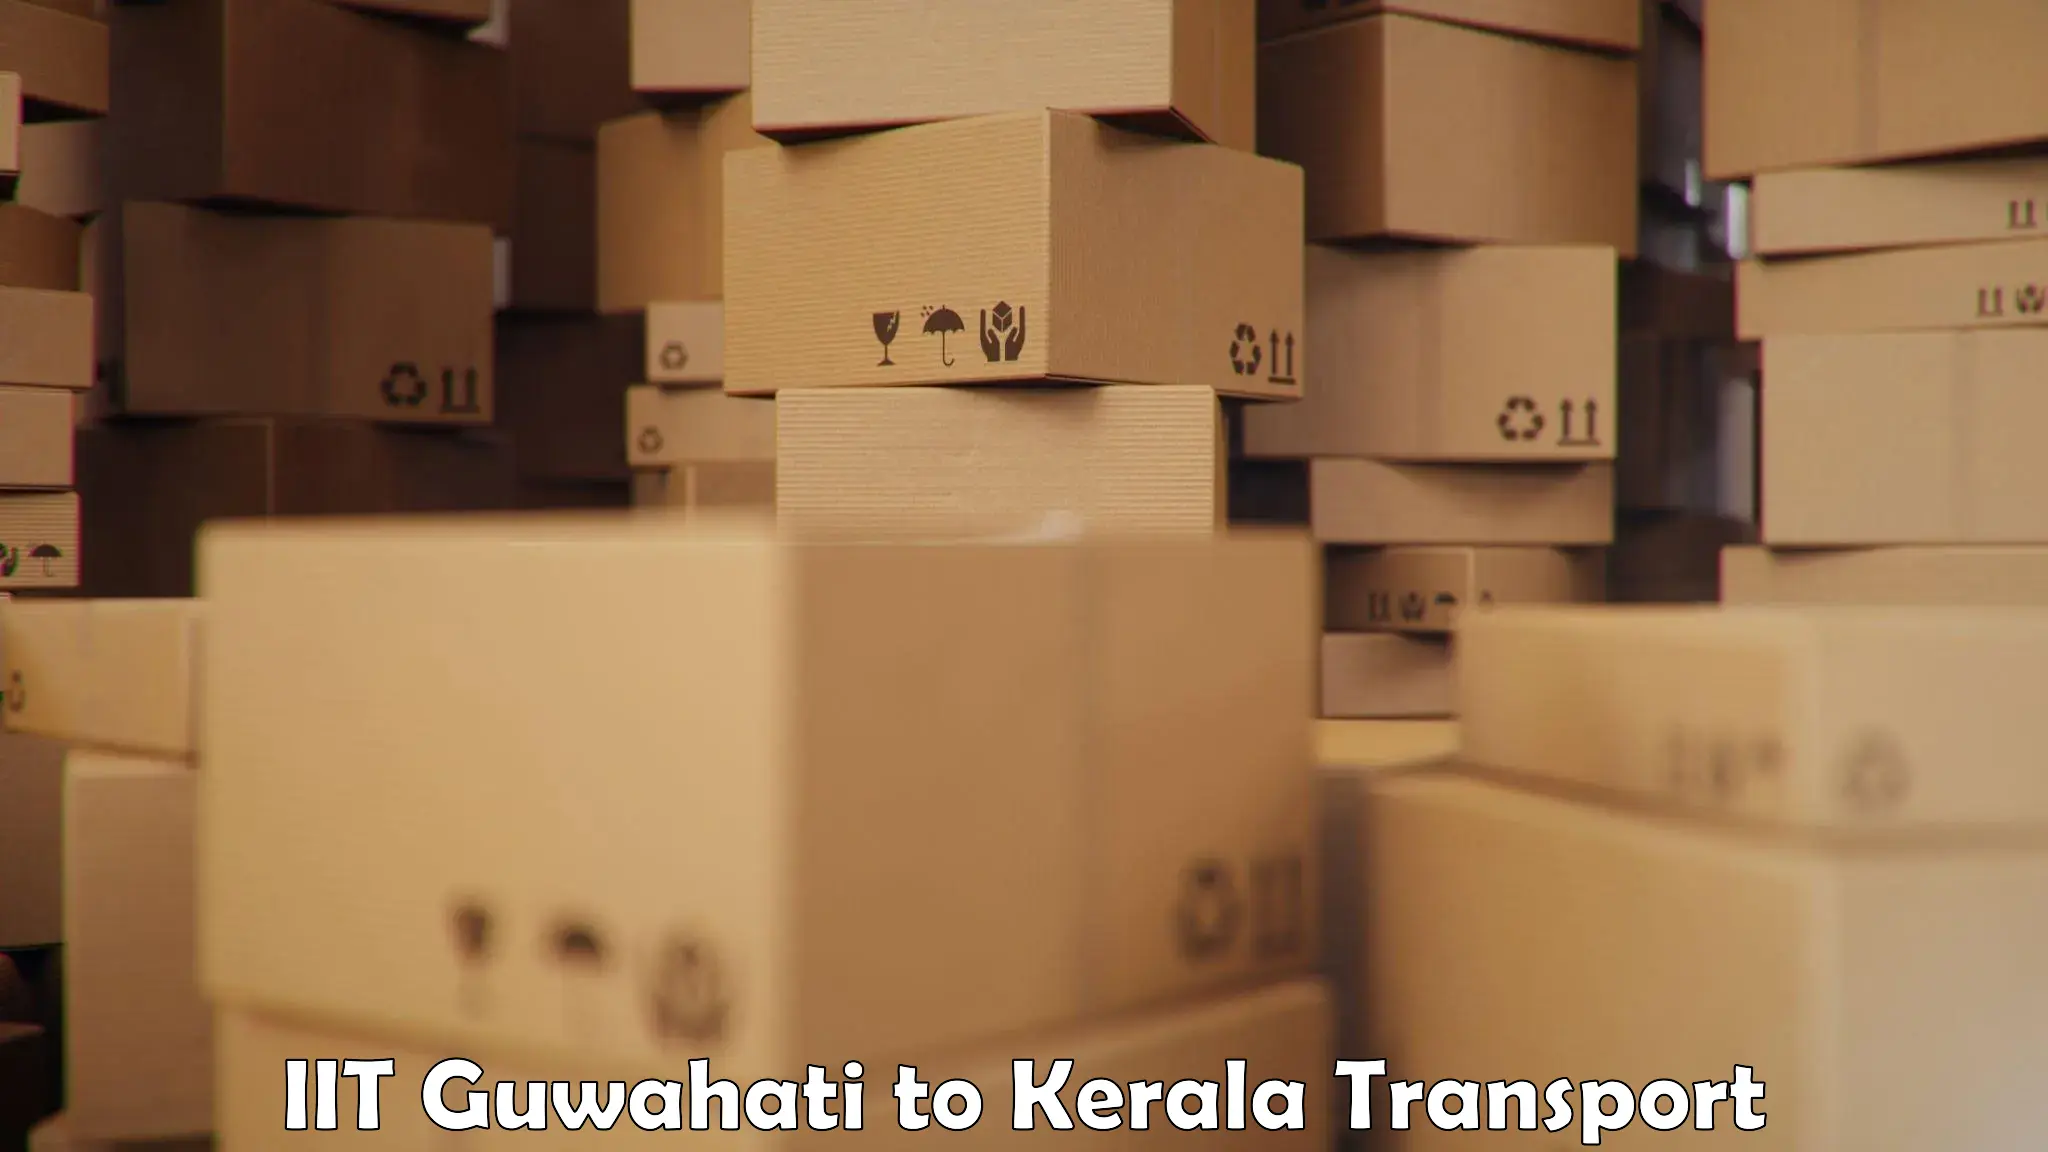 Shipping partner IIT Guwahati to Thrissur